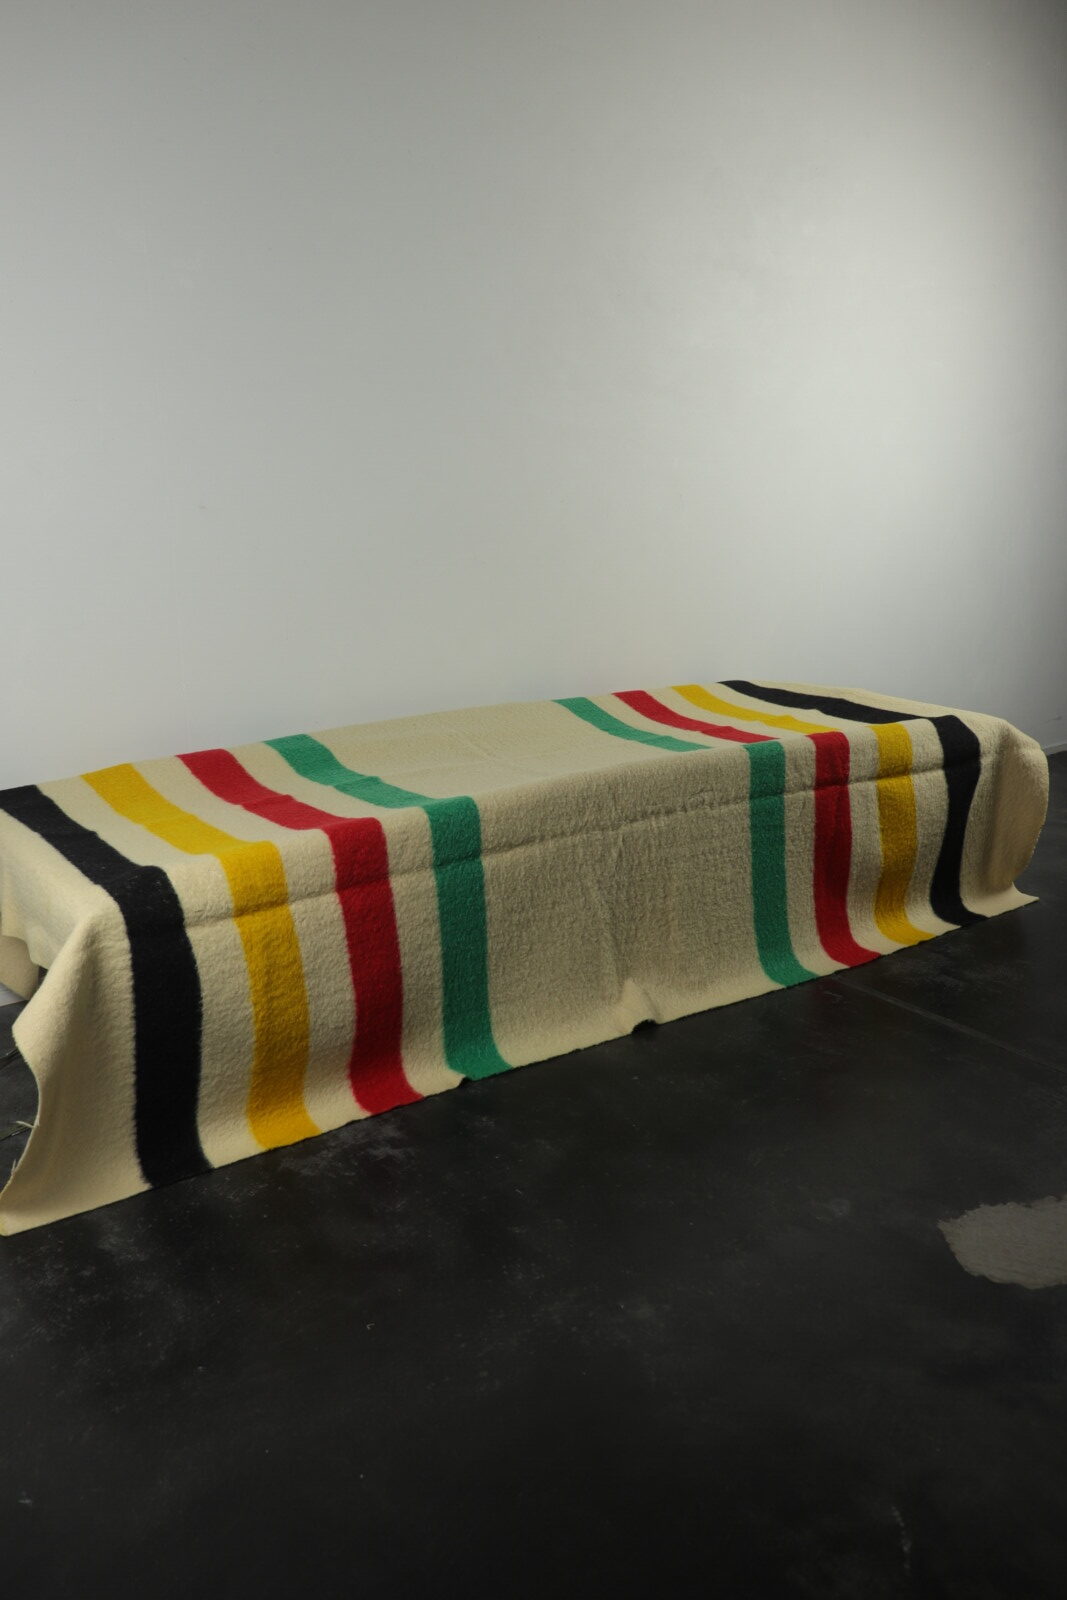 Hudson's bay blanket,point blanket,wool blanket,damaged,England,vintage